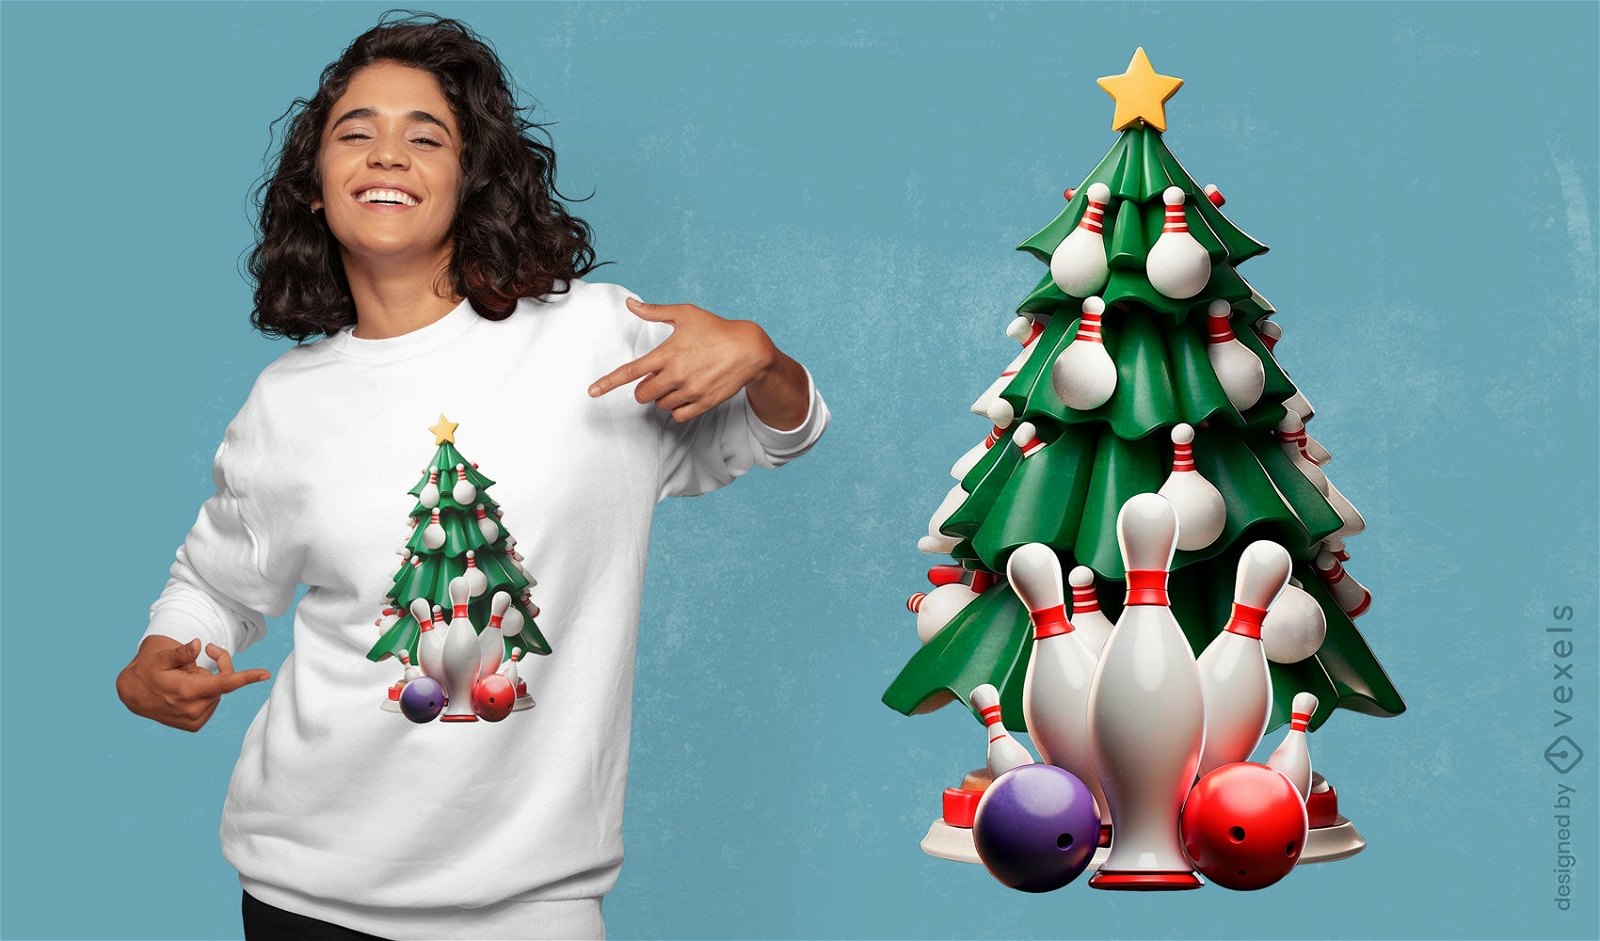 Bowling Christmas tree t-shirt design